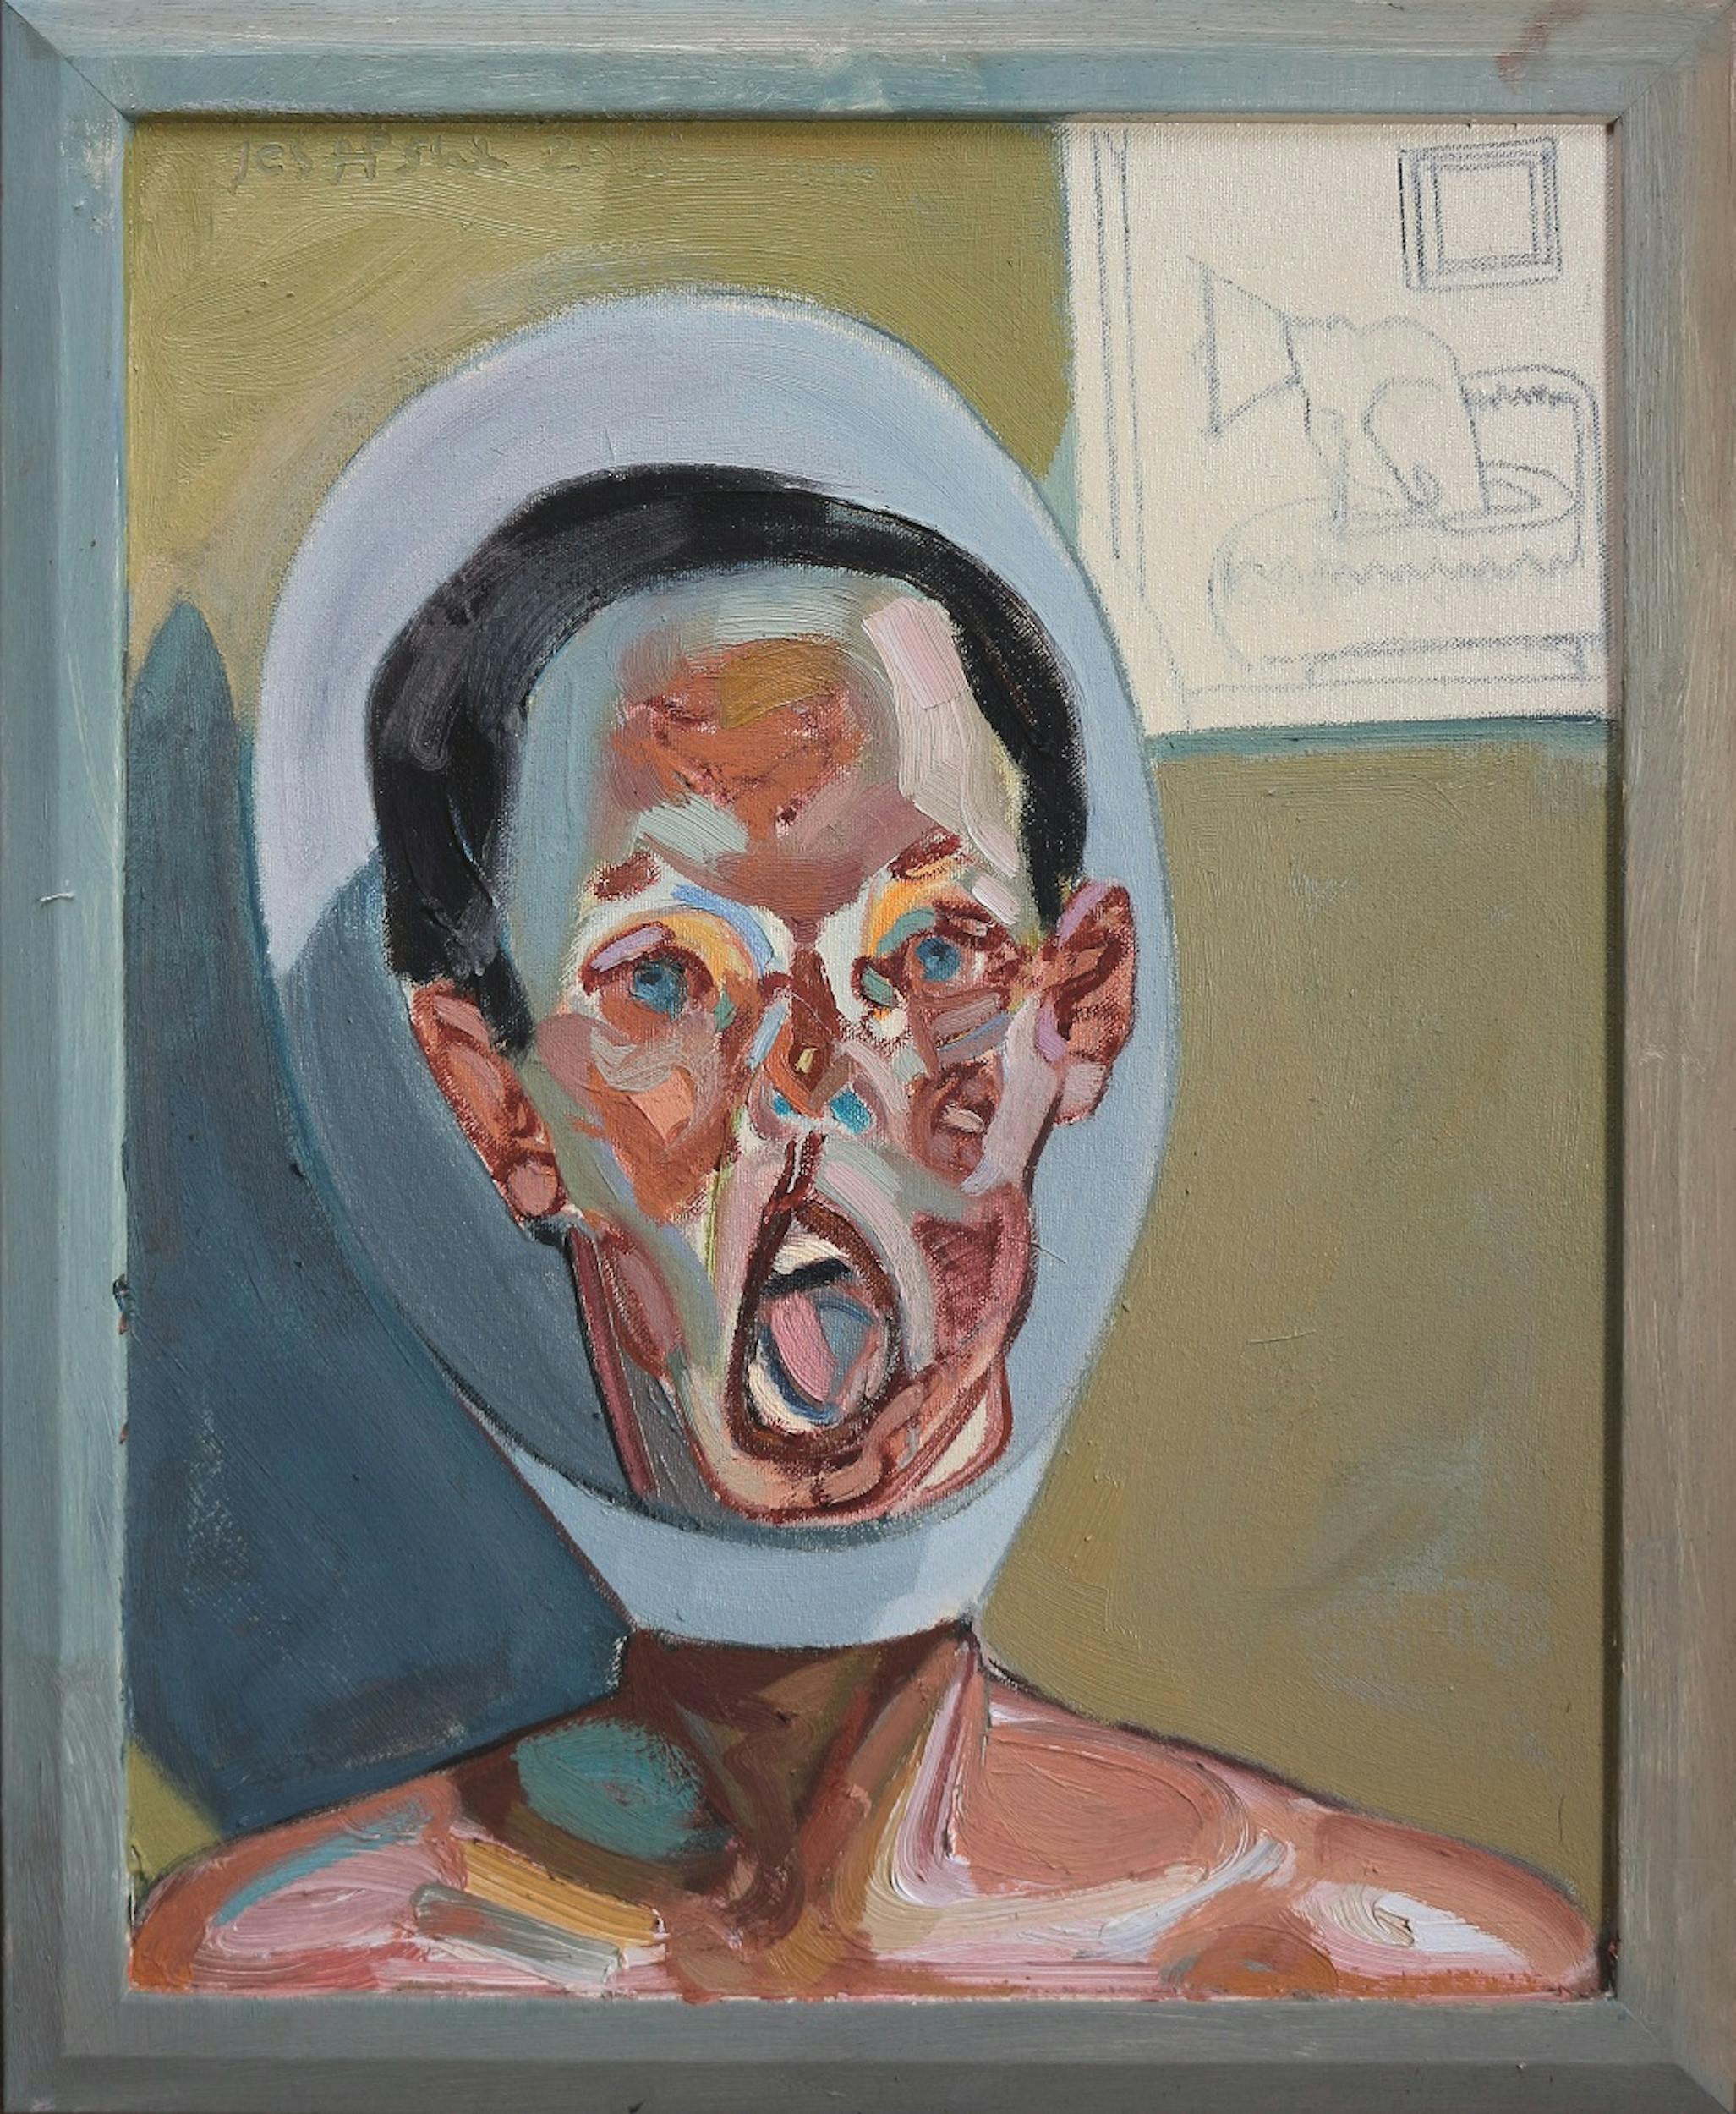 Tesfaye Urgessa, Portrait of a Man (Ritratto d’uomo), 2015, olio su tela, oil on canvas.